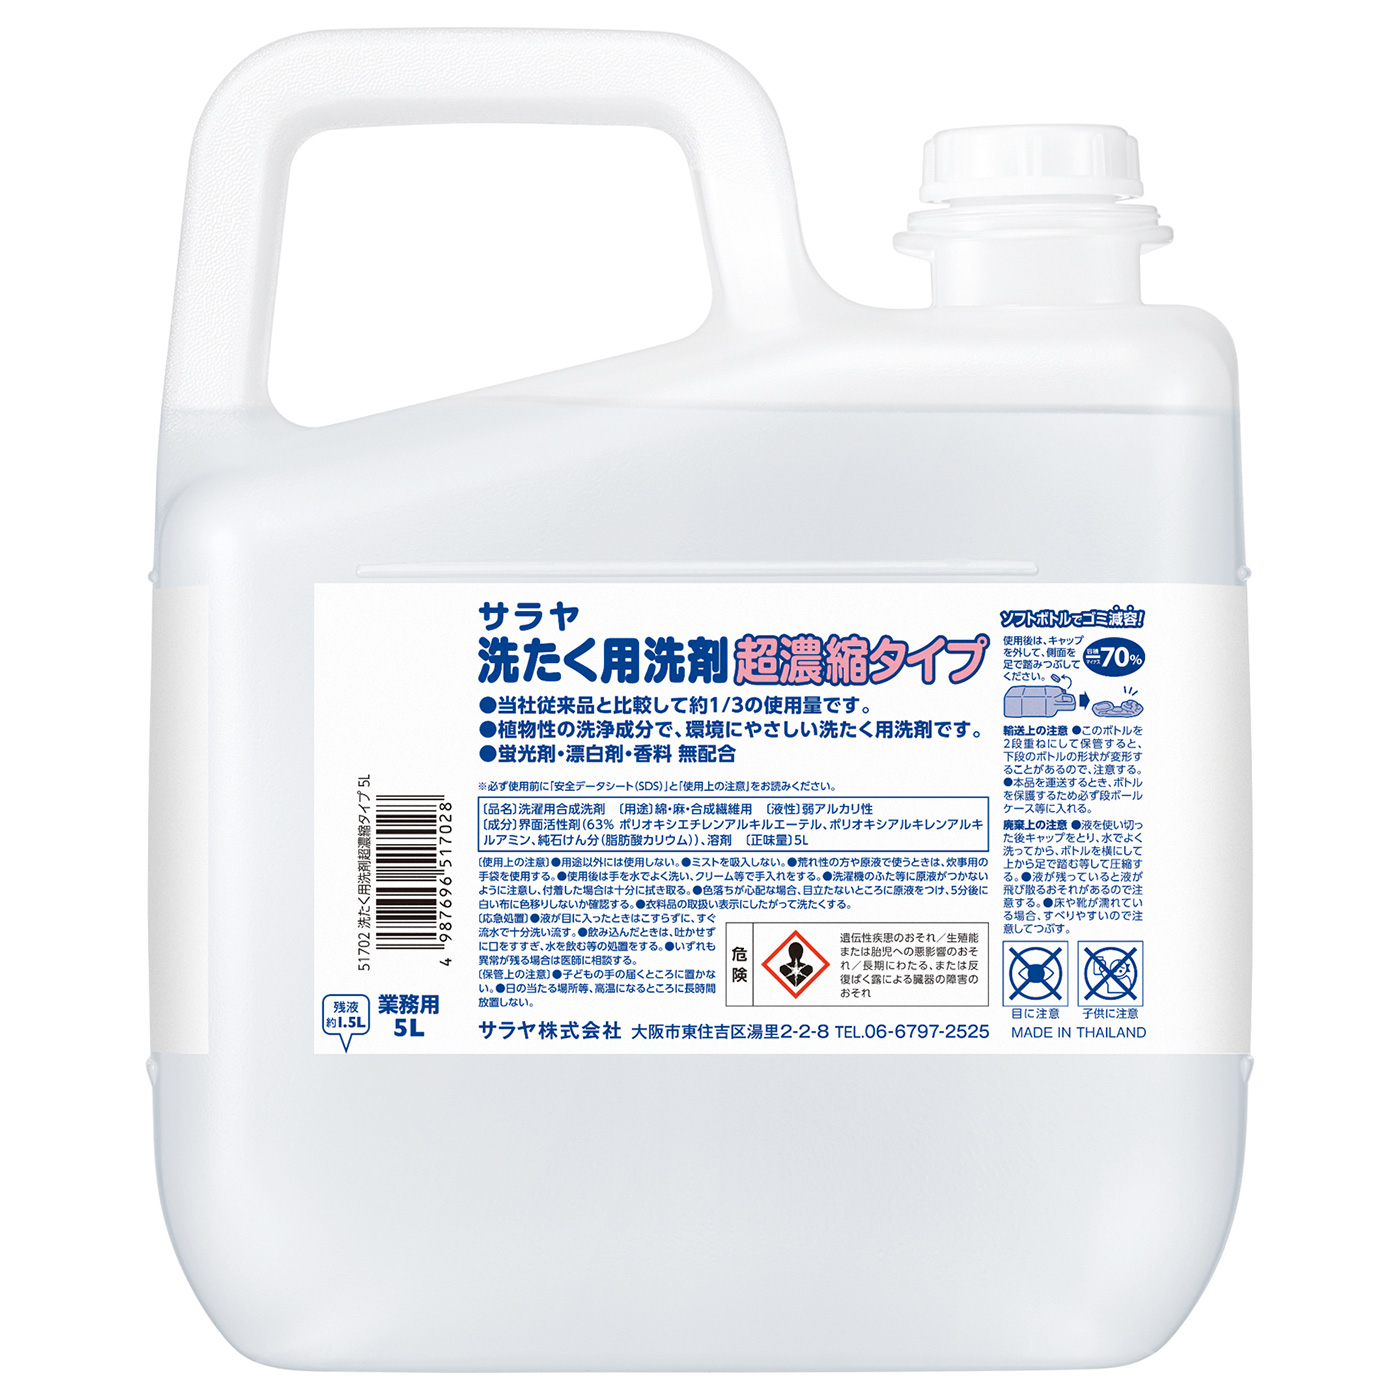 サラヤ洗たく用洗剤超濃縮タイプ 5L | サラヤ 洗たく用洗剤 超濃縮